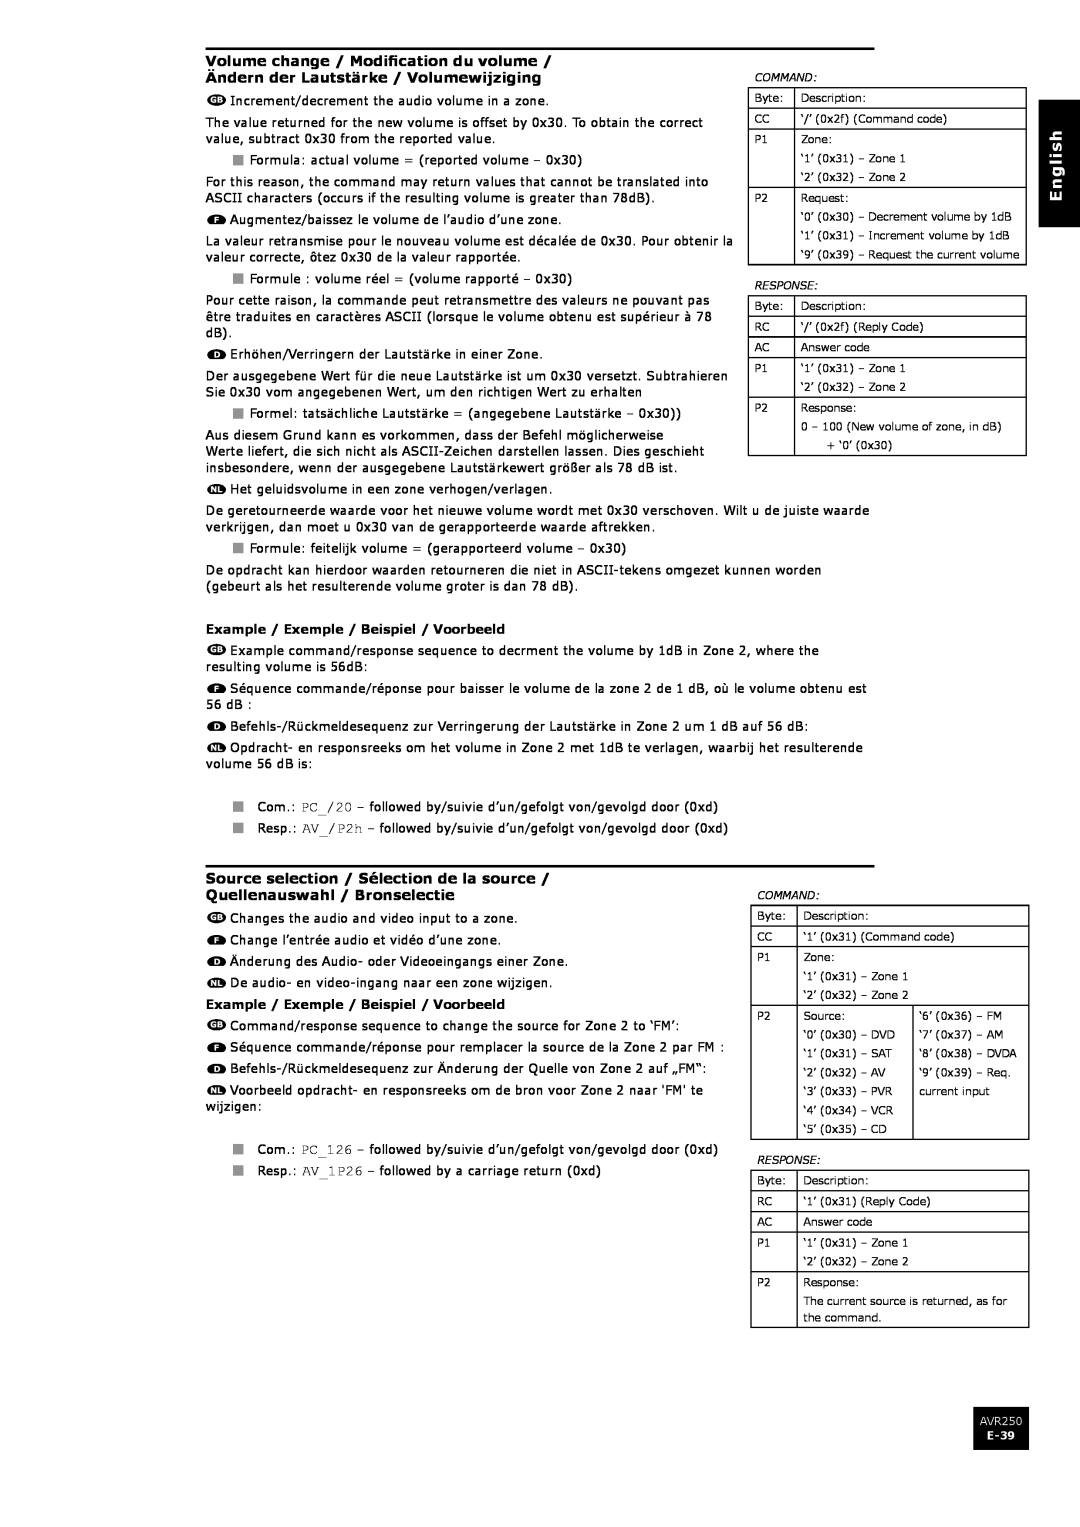 Arcam AVR250 manual Source selection / Sélection de la source, Quellenauswahl / Bronselectie, English 